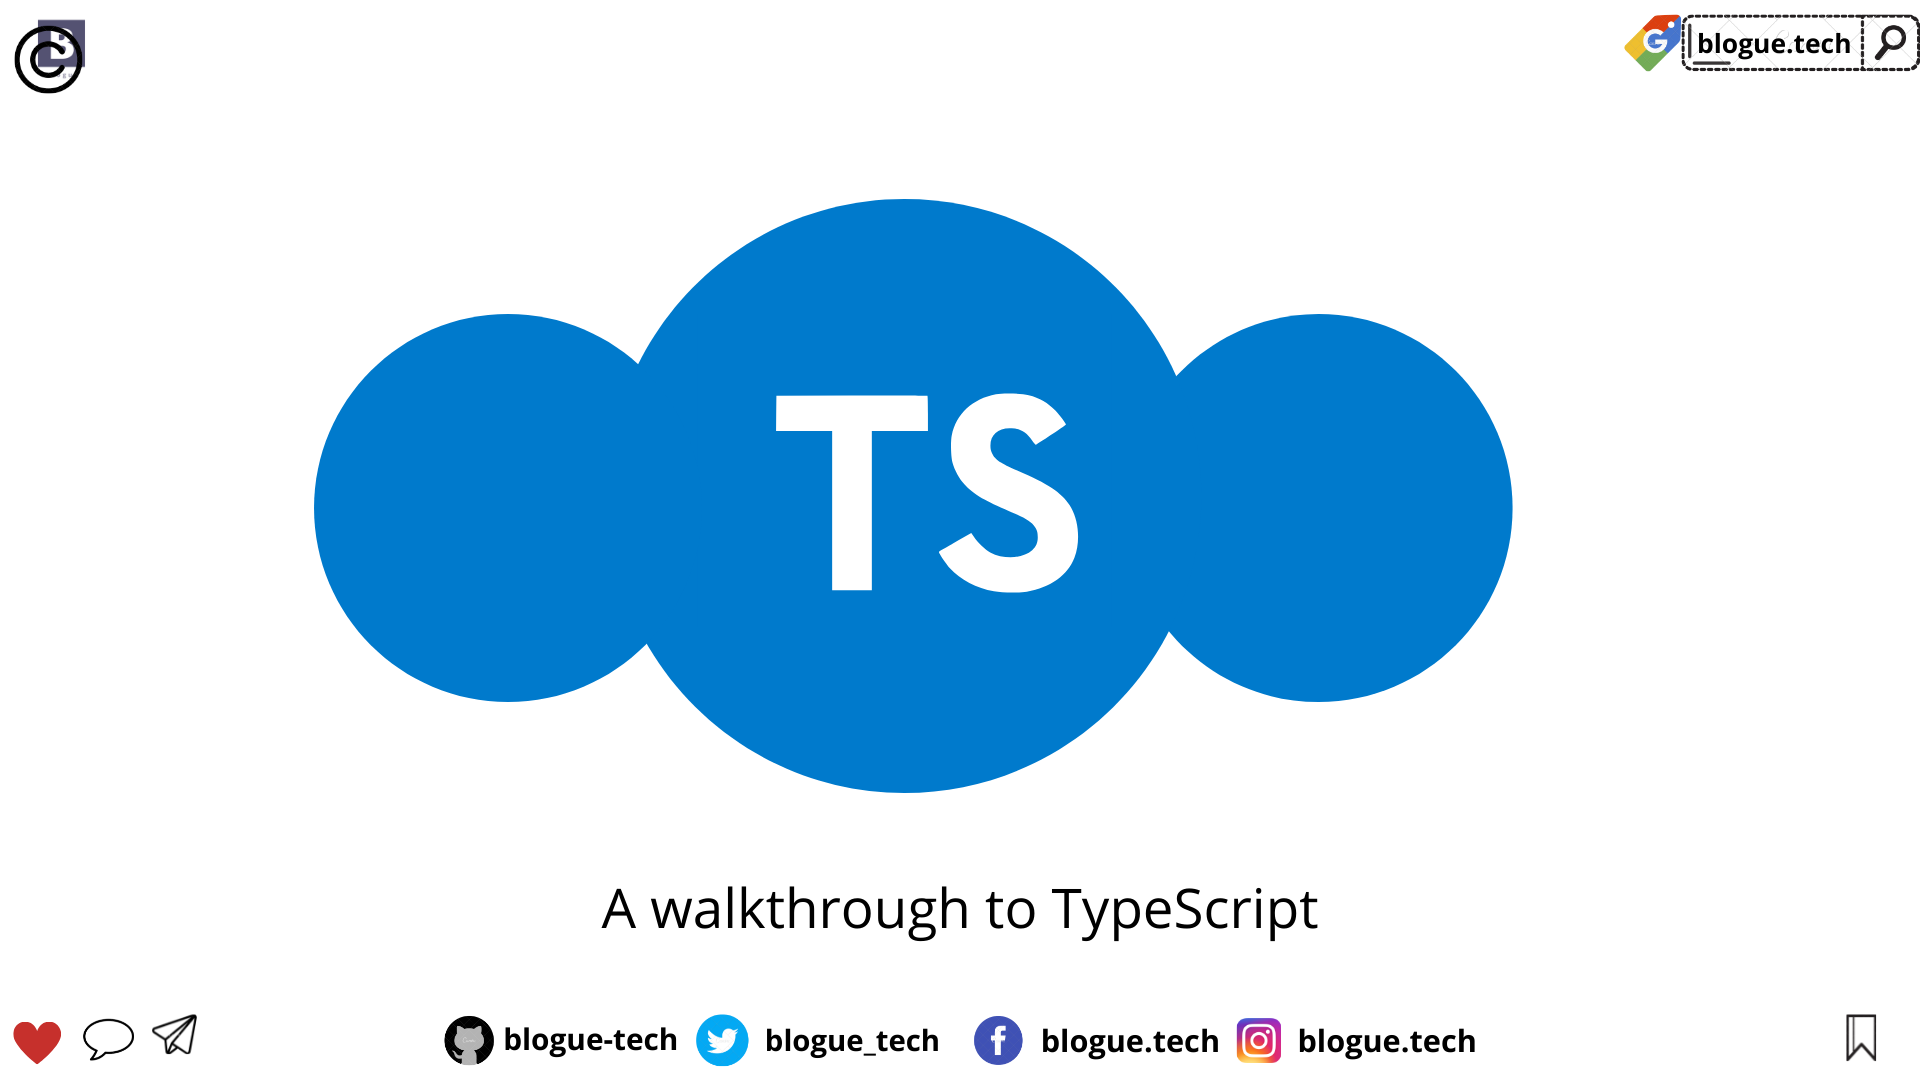 A walkthrough to TypeScript